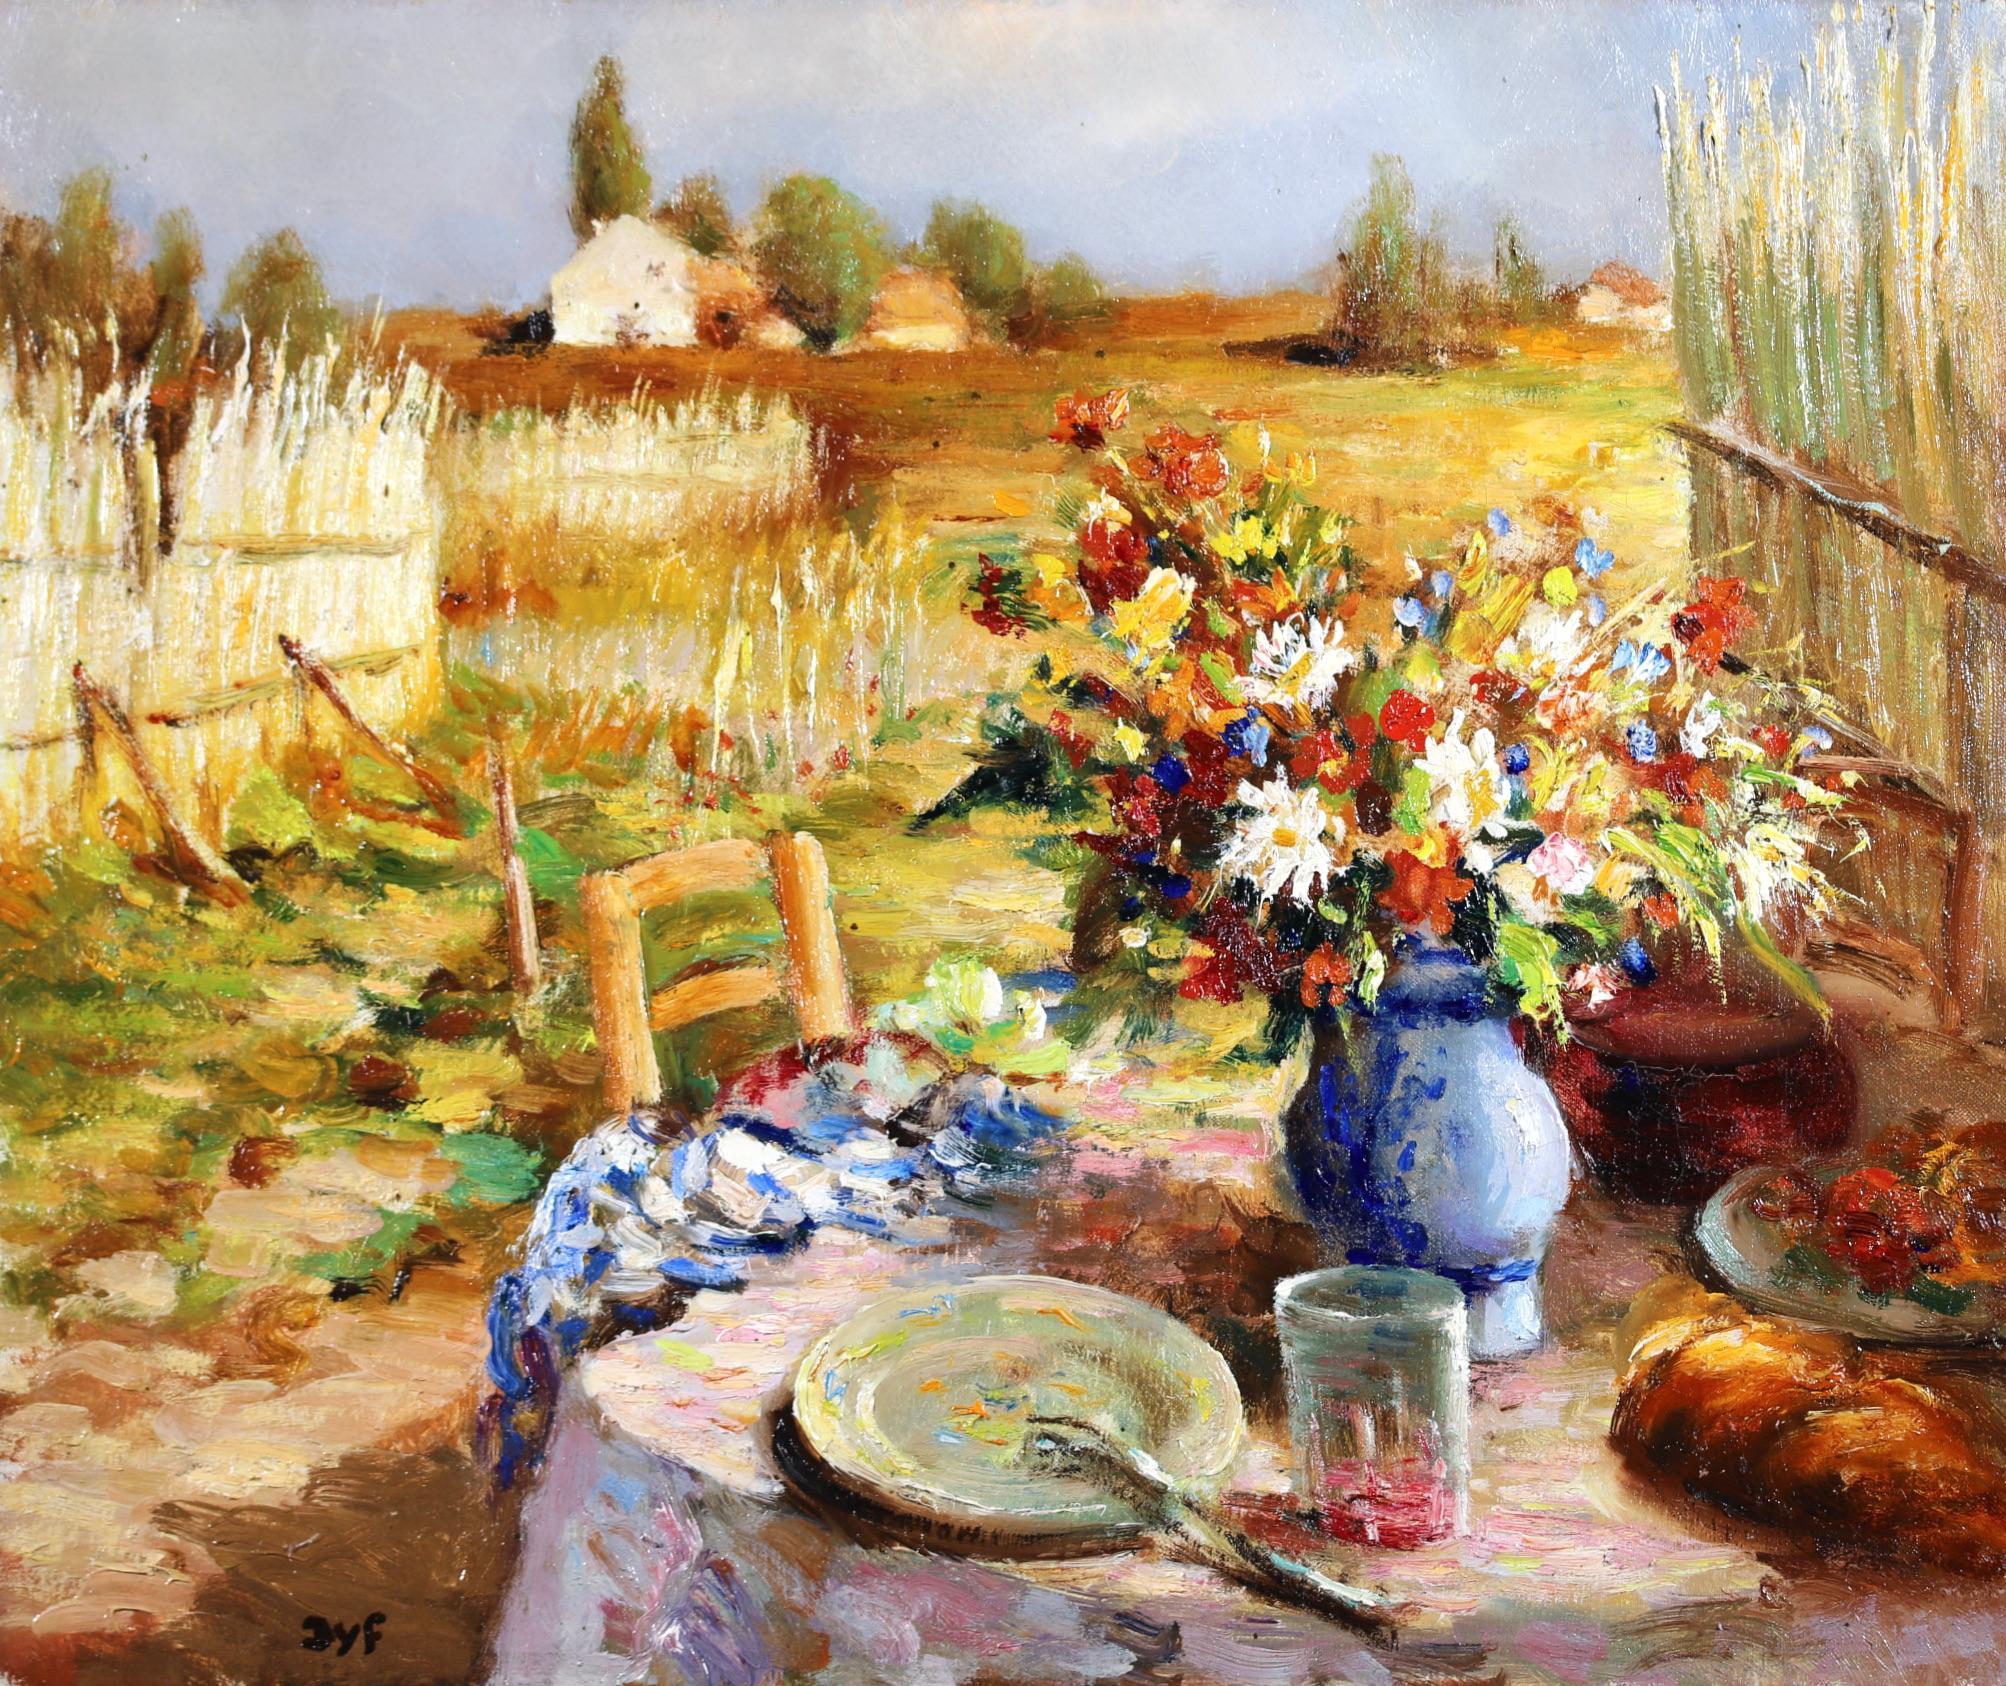 Le Petit Dejeuner - Post Impressionist Landscape Oil Painting by Marcel Dyf